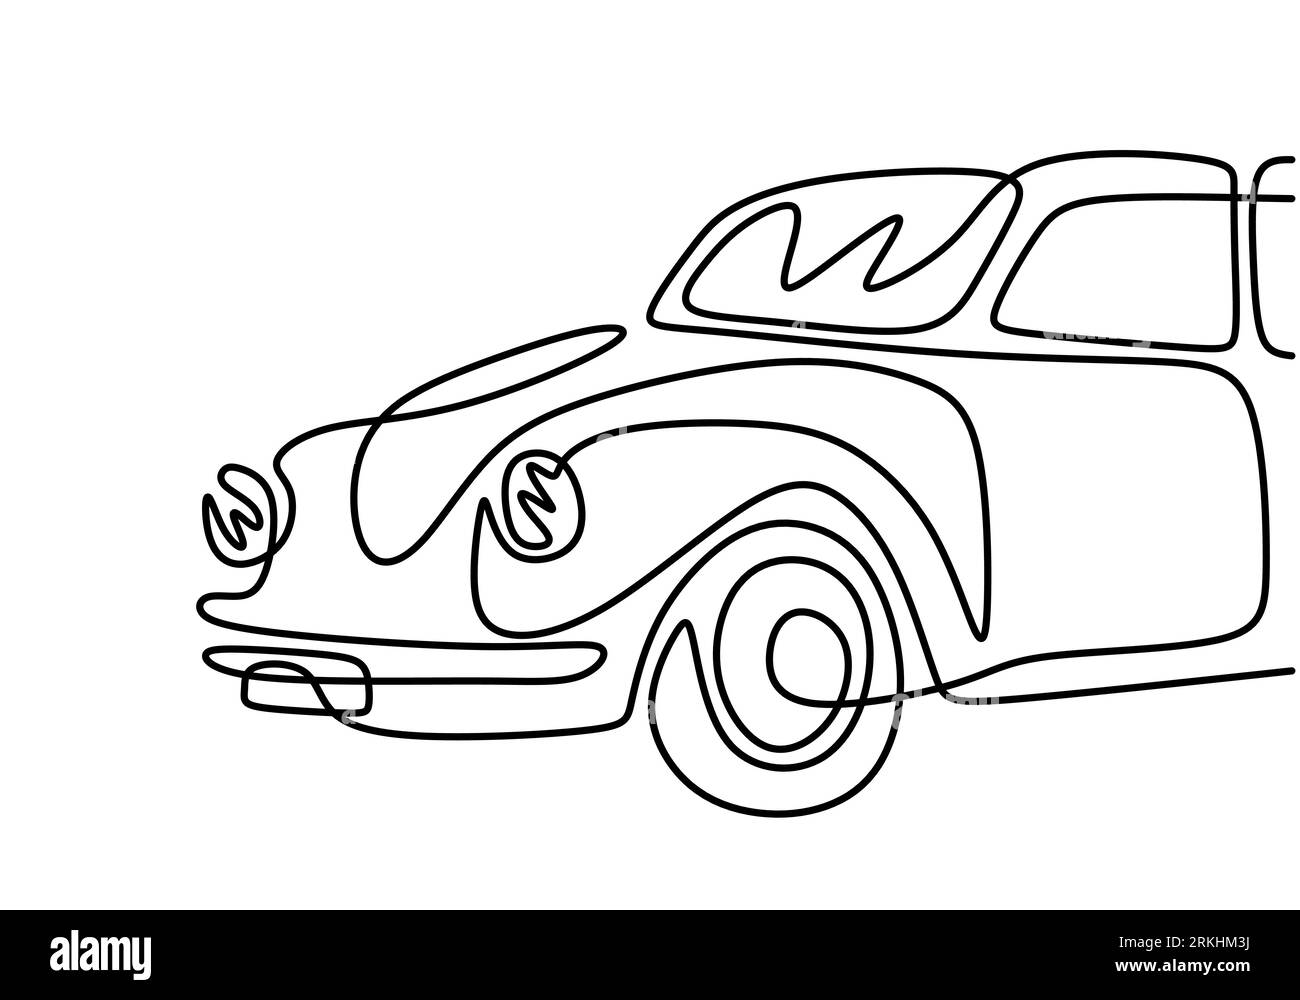 Retro-Auto durchgehende einzeilige Zeichnung isoliert auf weißem Hintergrund. Alter Oldtimer Volkswagen Beetle minimalistischer handgezeichneter linearer Entwurf. Vektorklas Stock Vektor